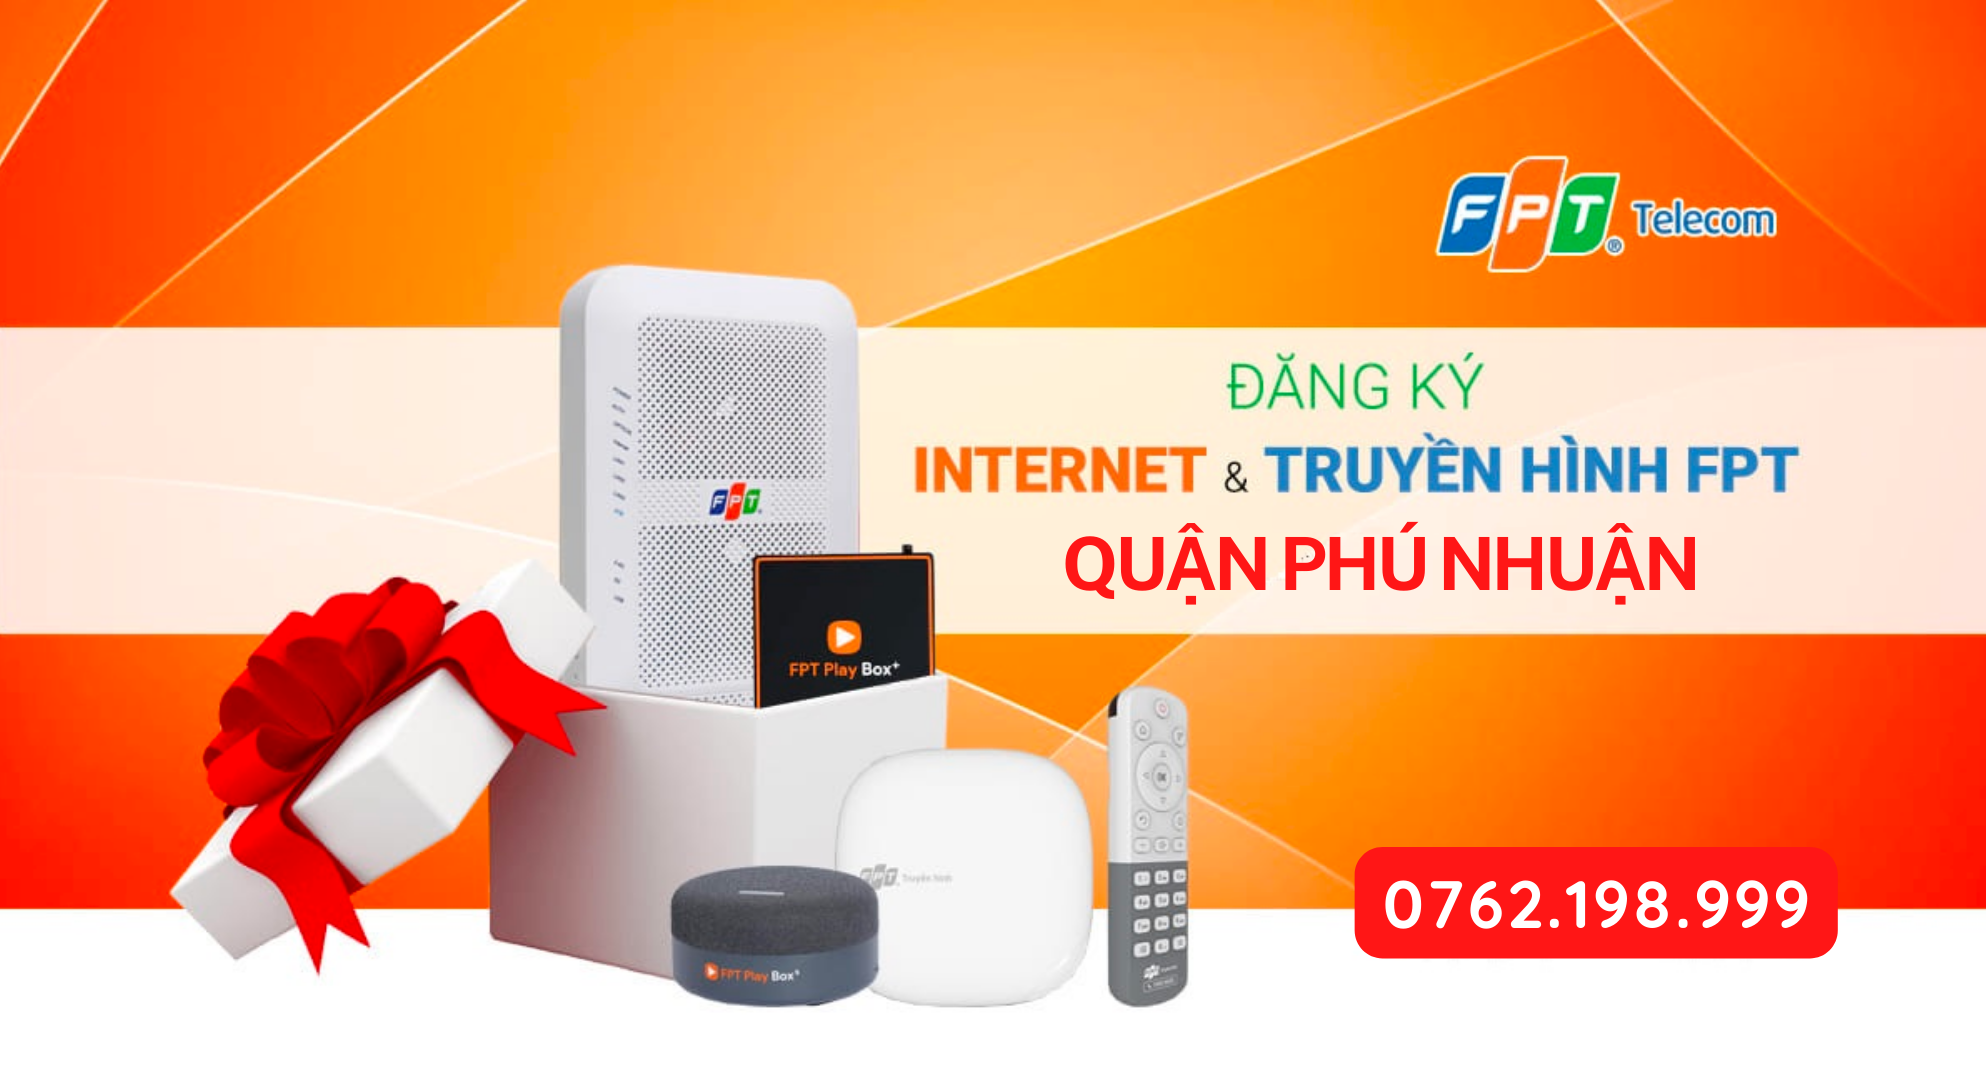 Quy trình, thủ tục lắp đặt wifi FPT tại quận Phú Nhuận - viettelinternet24h.com